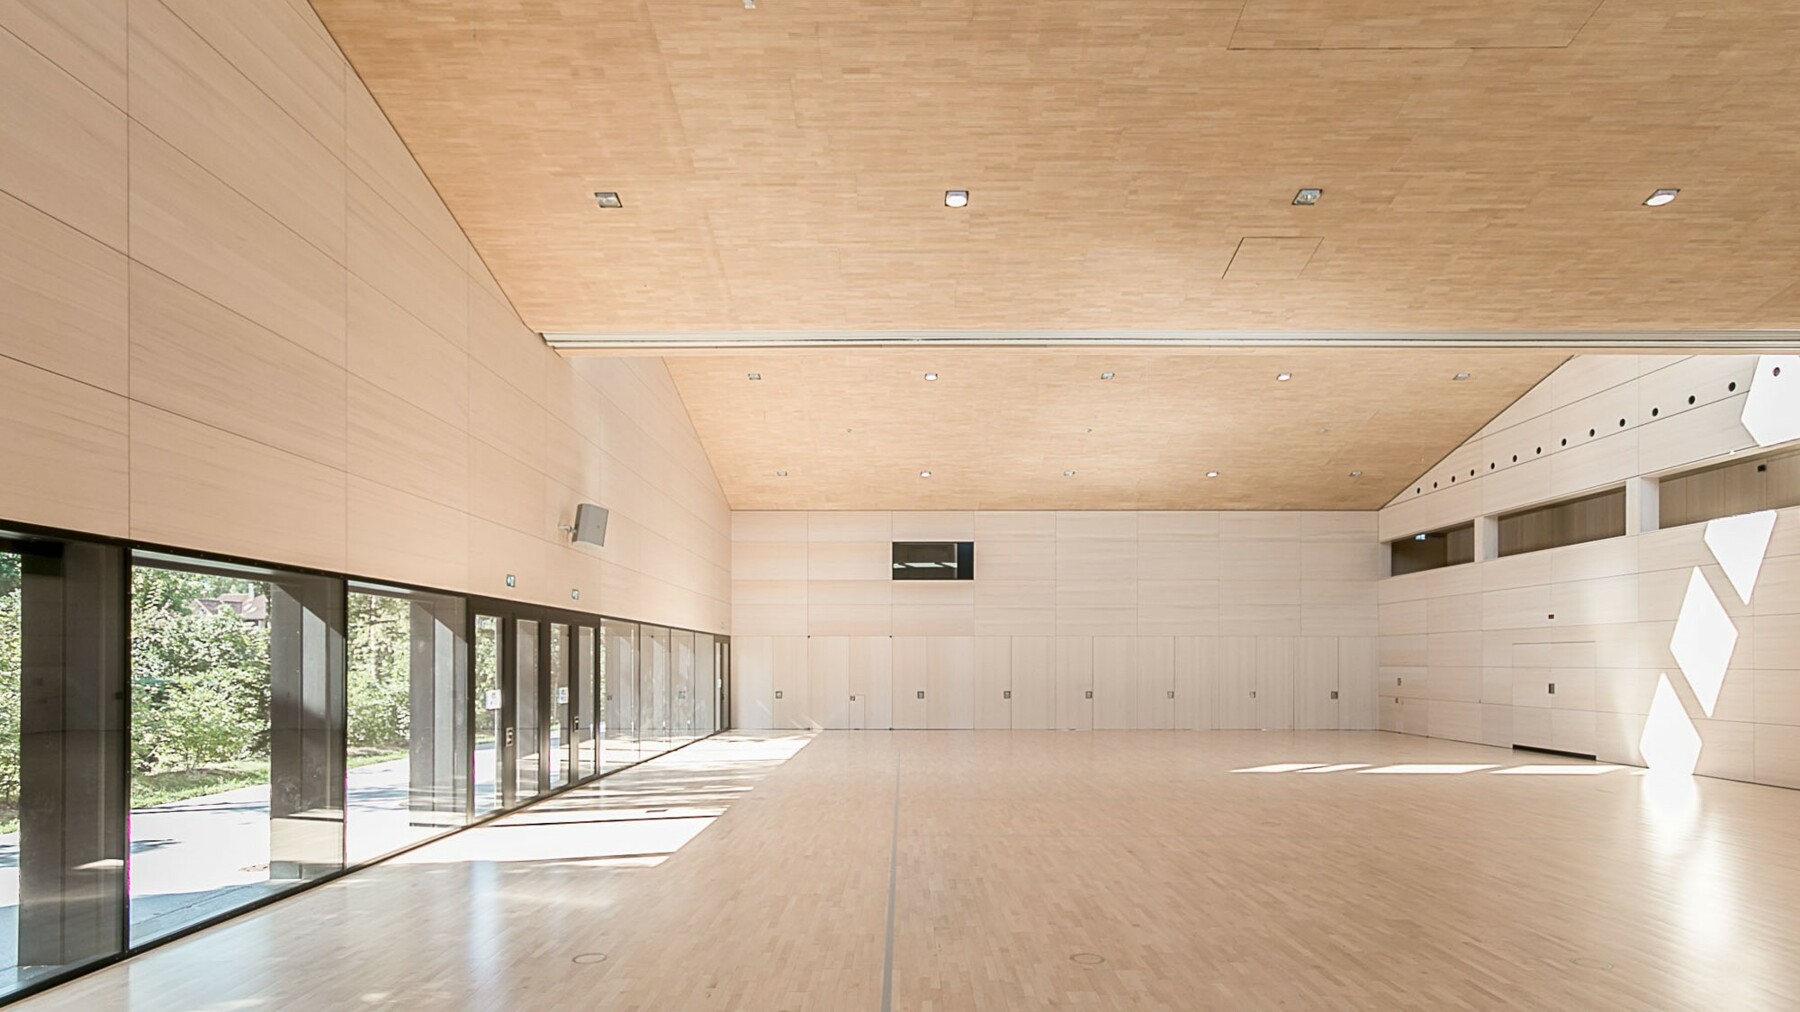 Die Echtholz Akustik-Deckenpaneele von Lignotrend verkleiden die gesamte Dachkonstruktion und verhüllen Lüftungstechnik und Installationsleitungen, sodass eine weite, einheitliche Fläche entsteht. 